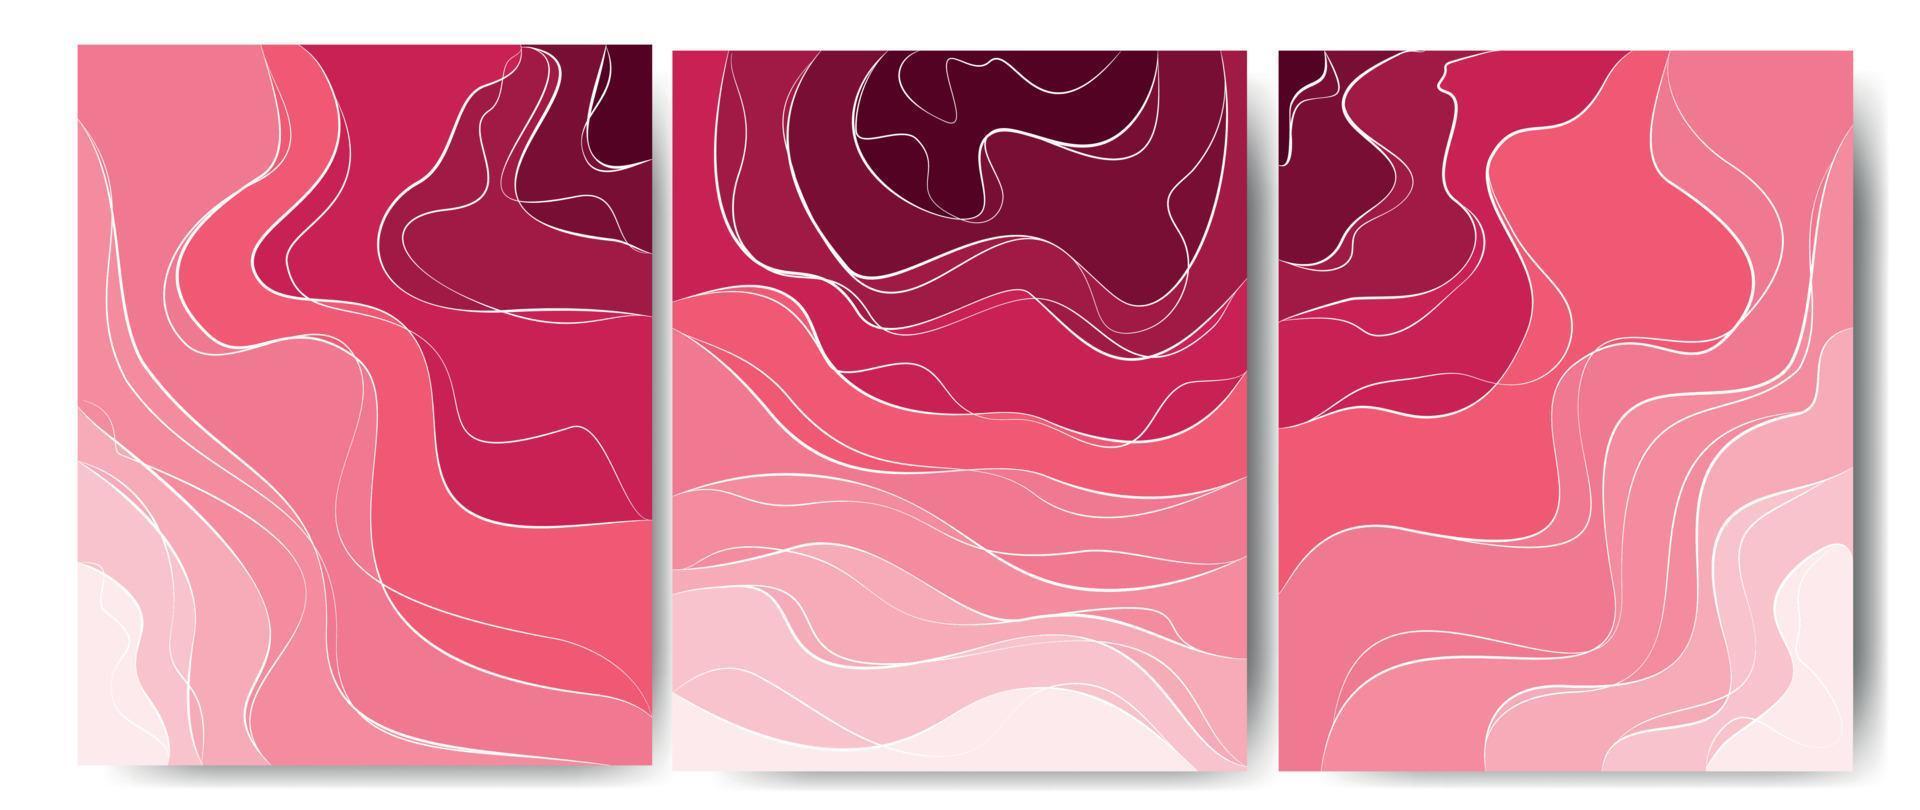 elegante achtergrond met golflijn witte elementen op roze tint. 3D-papier gesneden. vectorillustratie voor ontwerp. een geweldige roos. vector